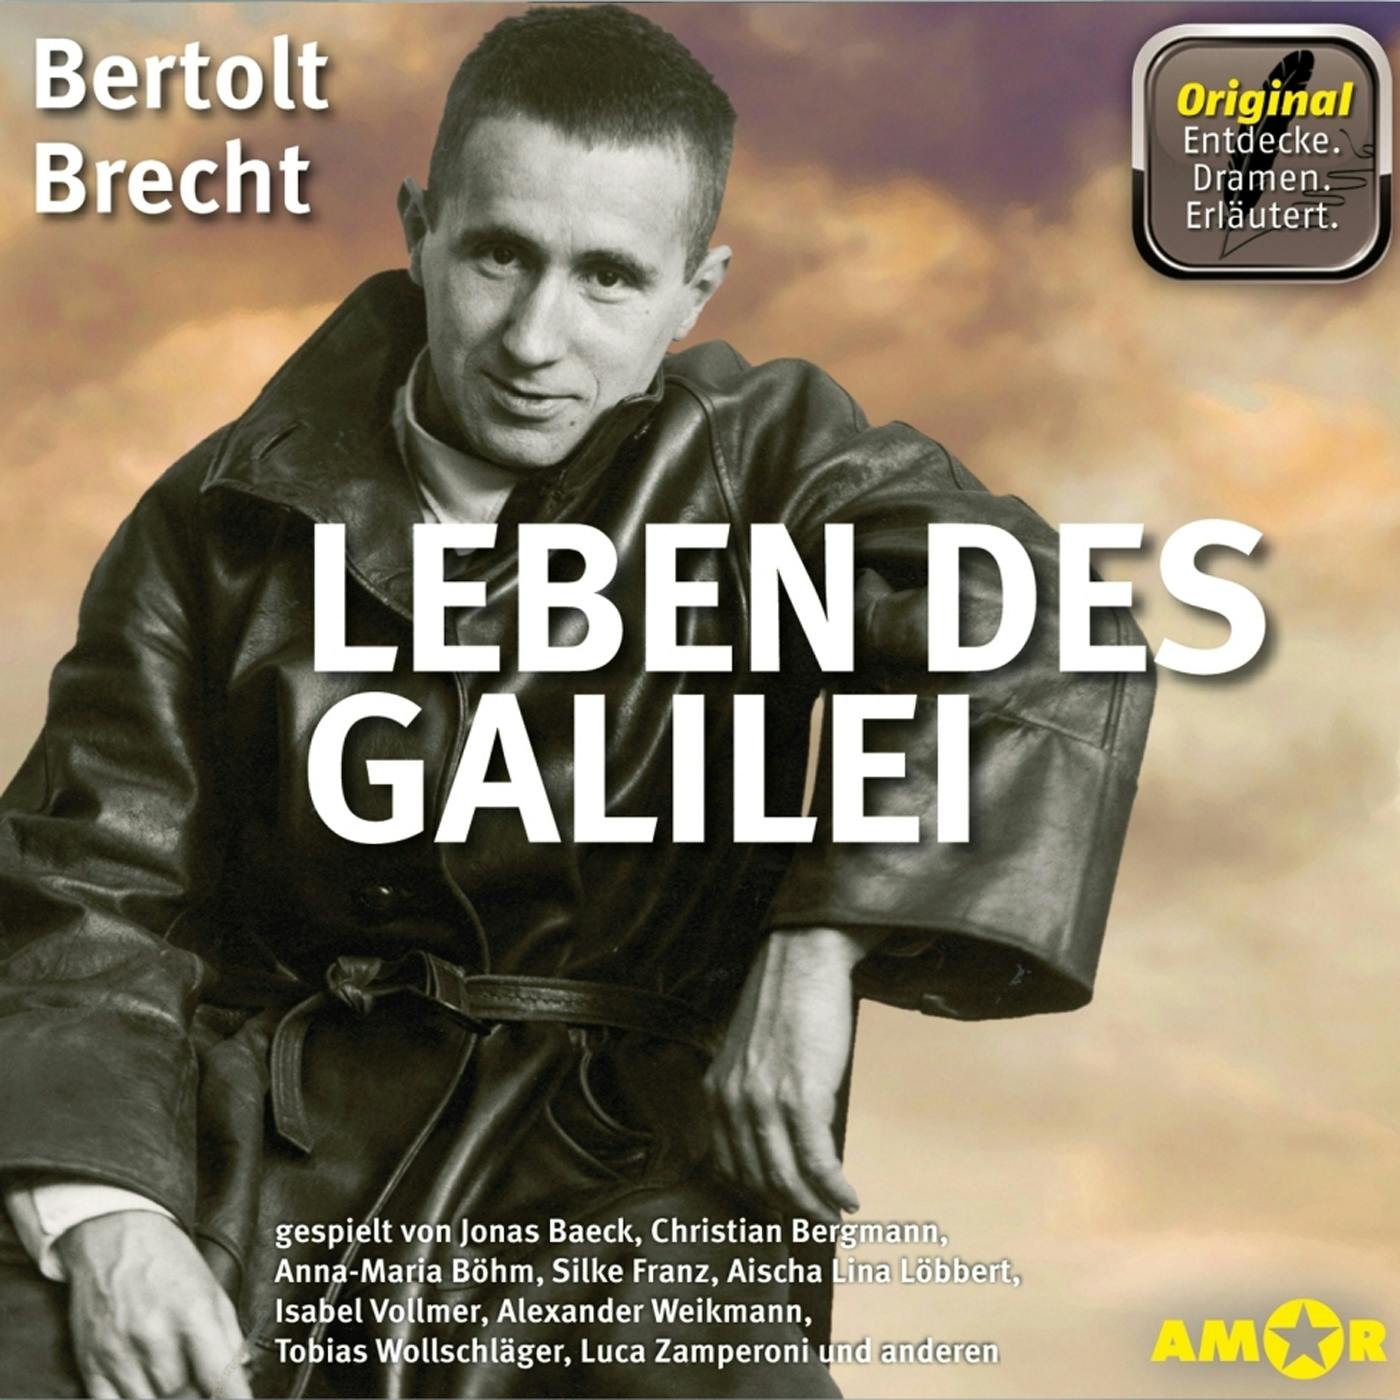 Leben des Galilei - Dramen. Erläutert. (Ungekürzt) - Bertolt Brecht